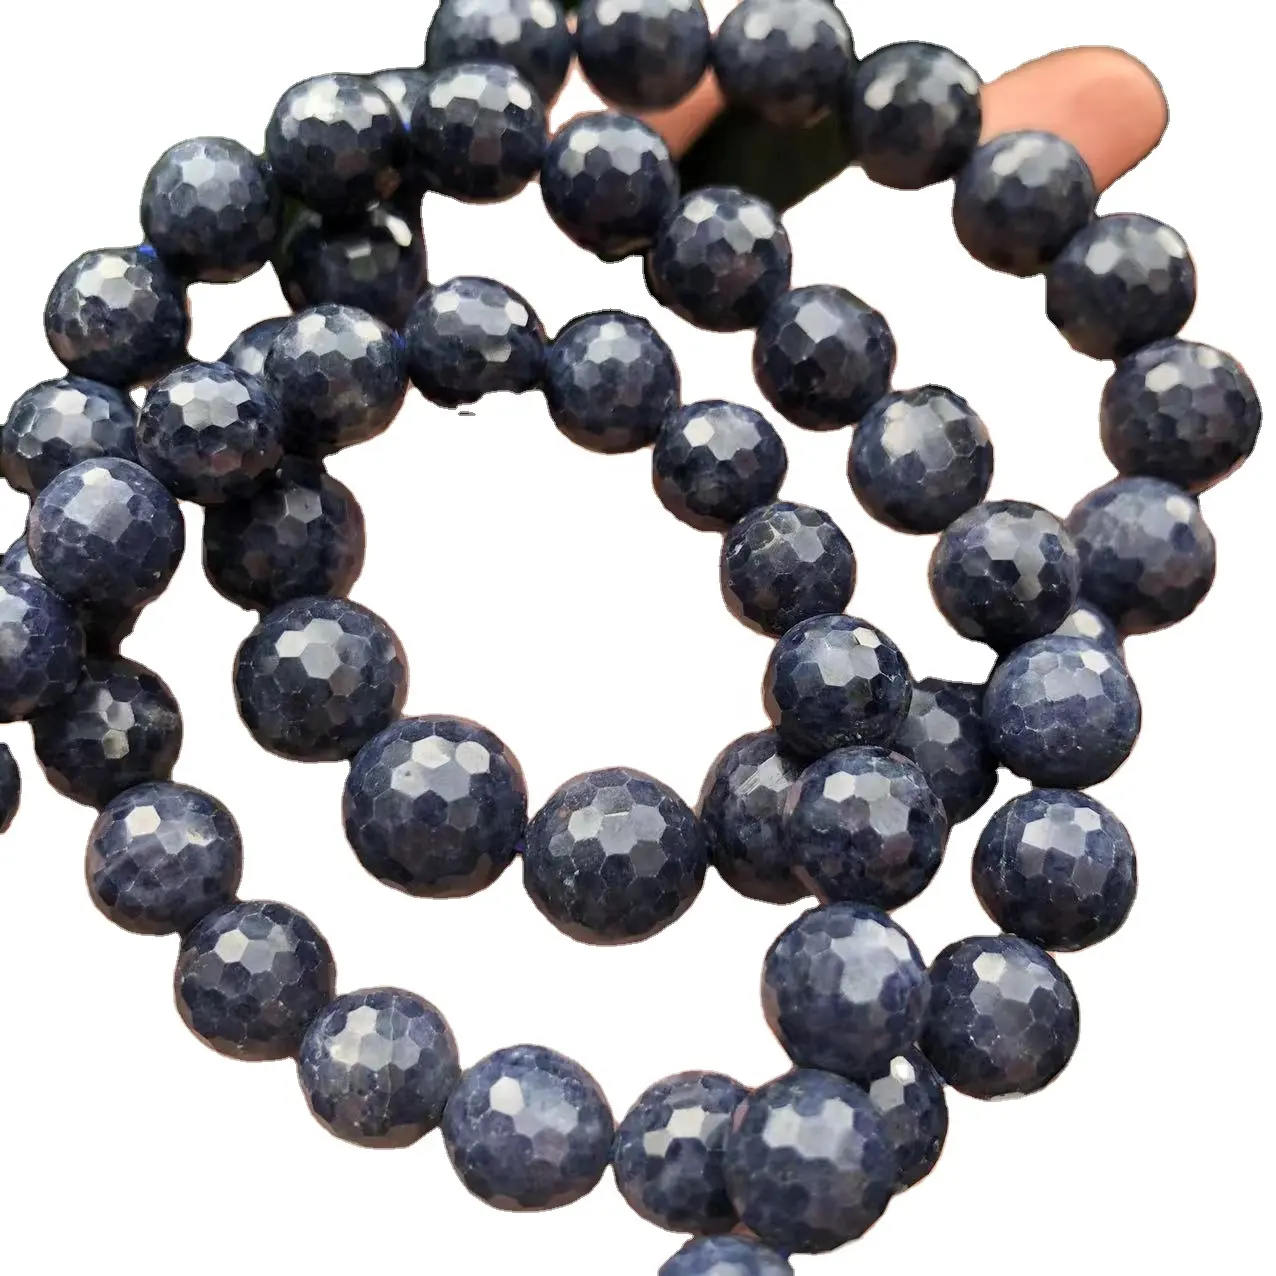 Piedra de zafiro azul Natural y auténtico, piedras preciosas semipreciosas redondas facetadas, sueltas, para diseño de joyería